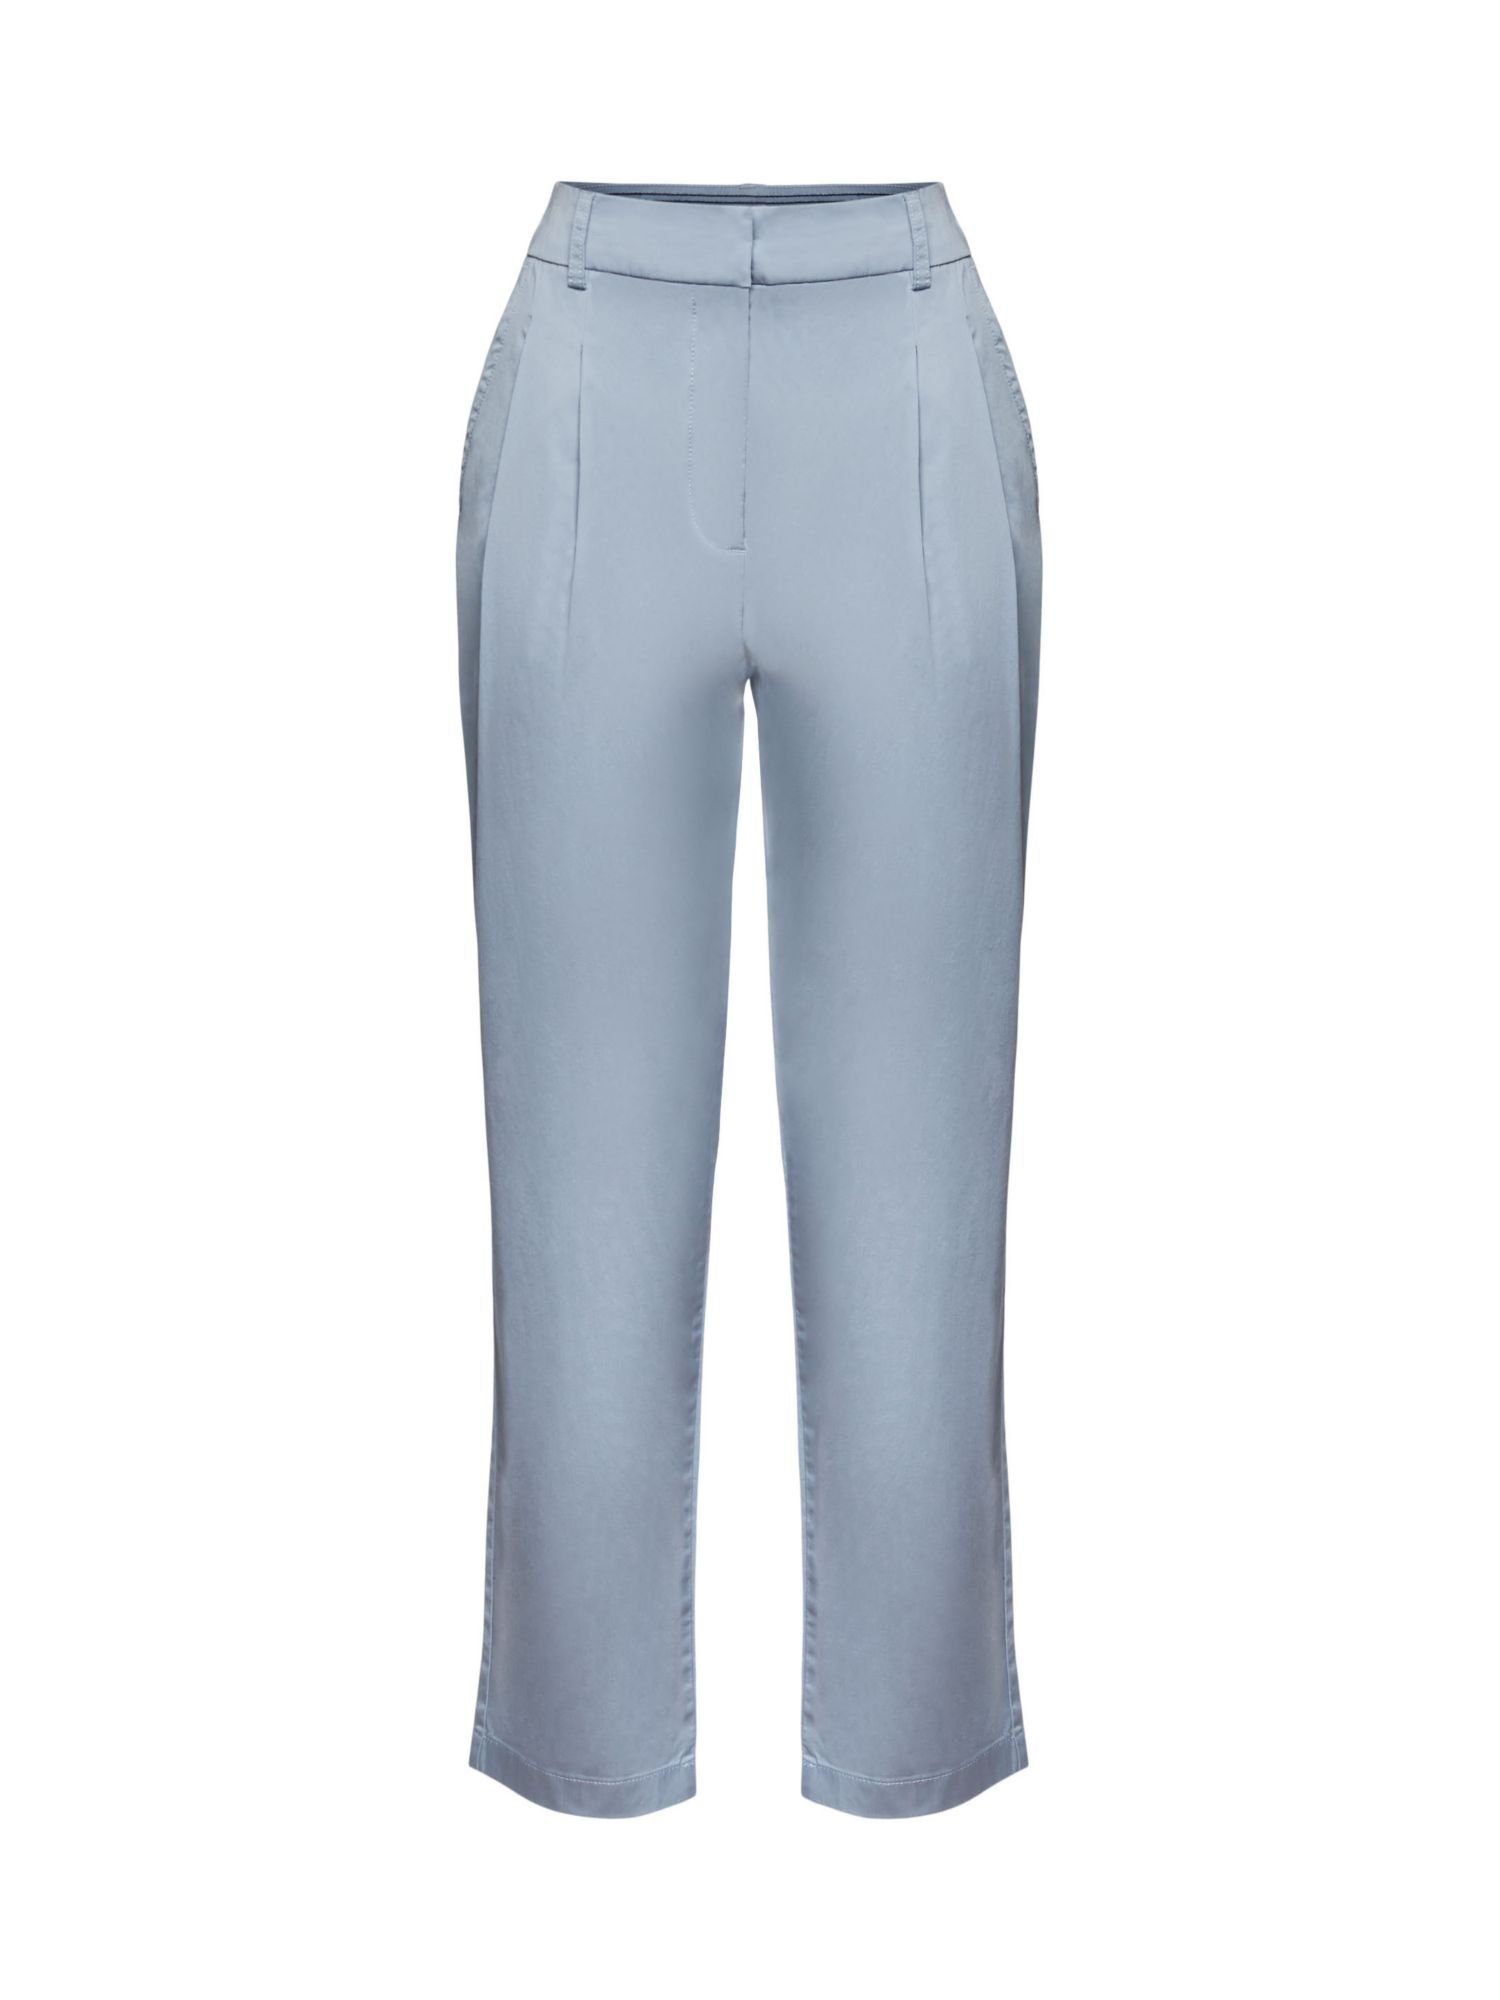 Esprit Collection 7/8-Hose Pants woven LIGHT BLUE LAVENDER | 7/8-Hosen